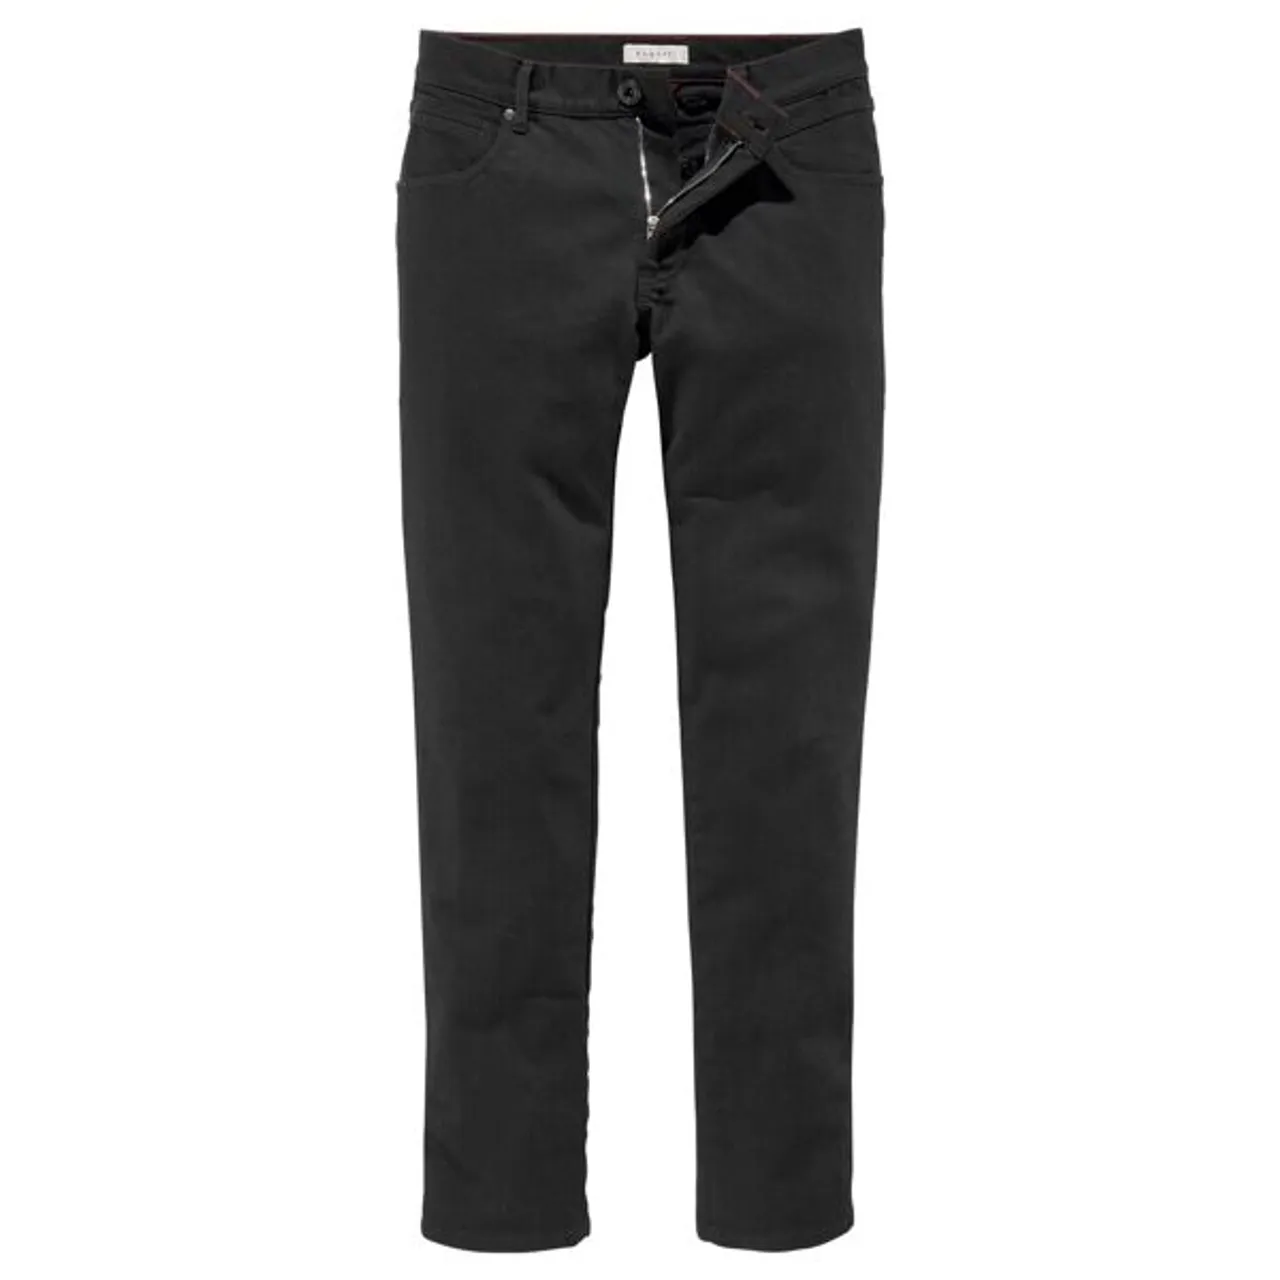 Regular-fit-Jeans BUGATTI "Flexcity" Gr. 38, Länge 32, schwarz (black) Herren Jeans Regular Fit